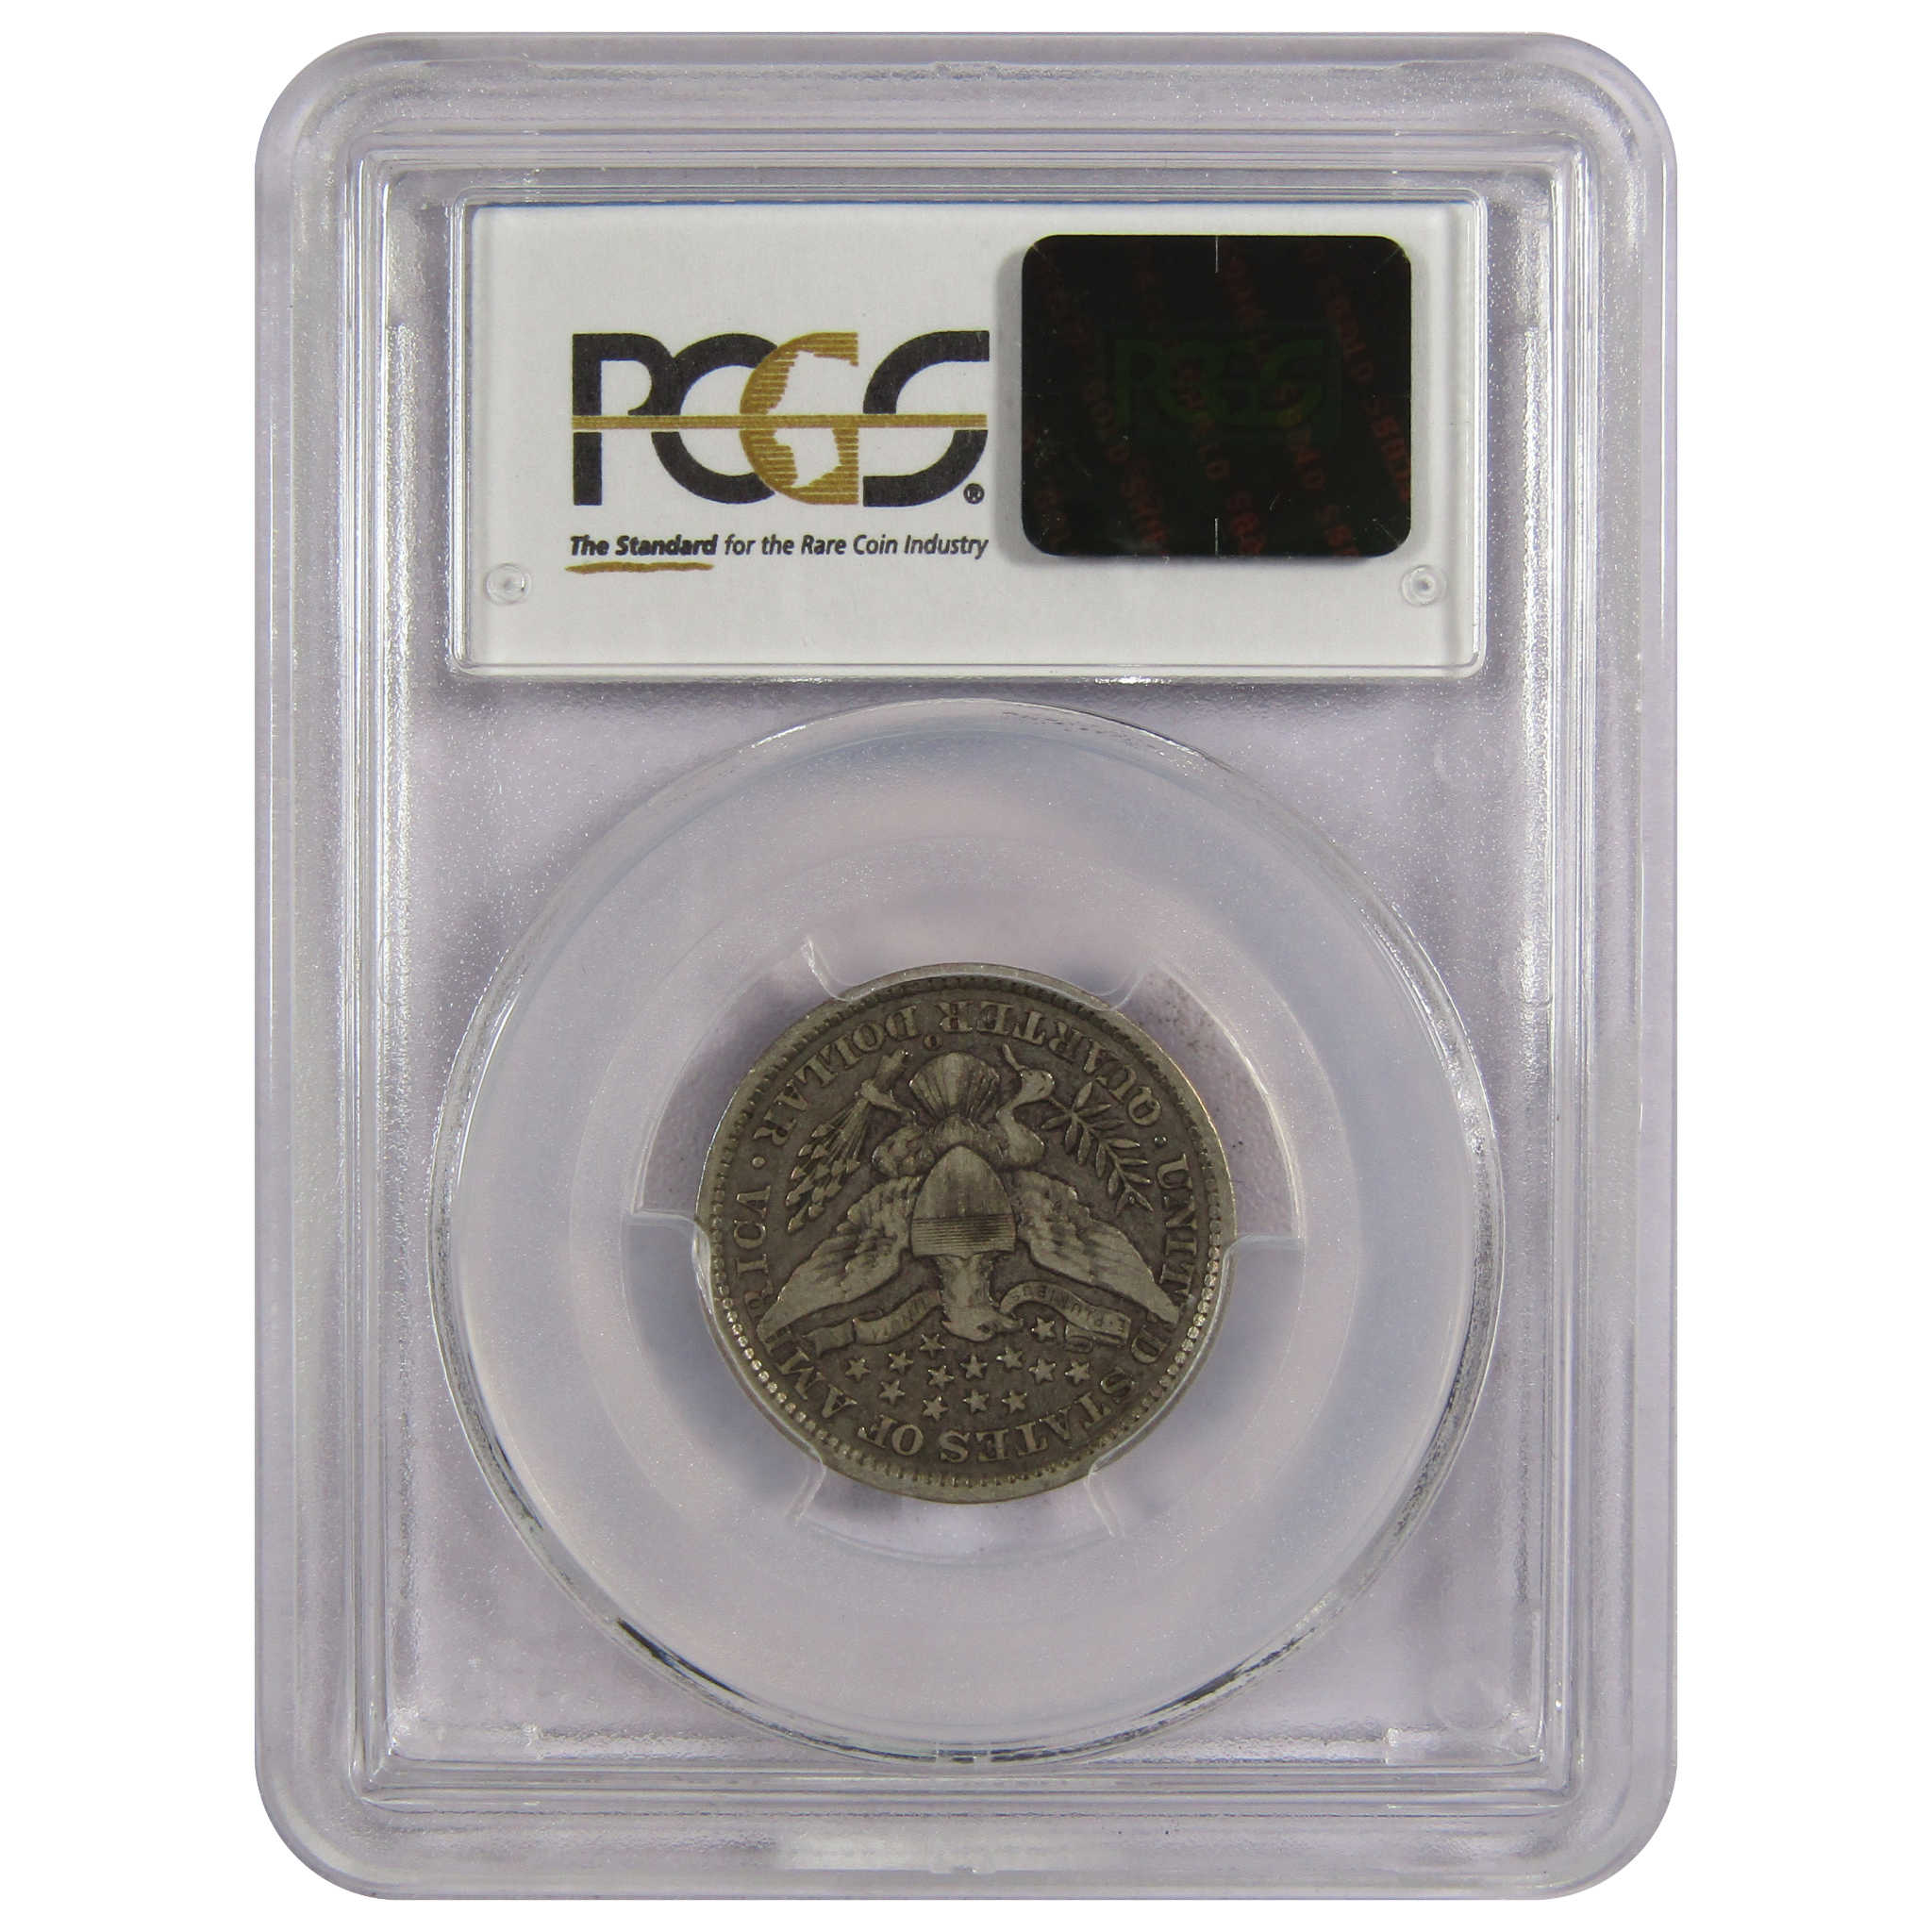 1896 O Barber Quarter VF 25 PCGS 90% Silver 25c Type Coin SKU:IPC7280